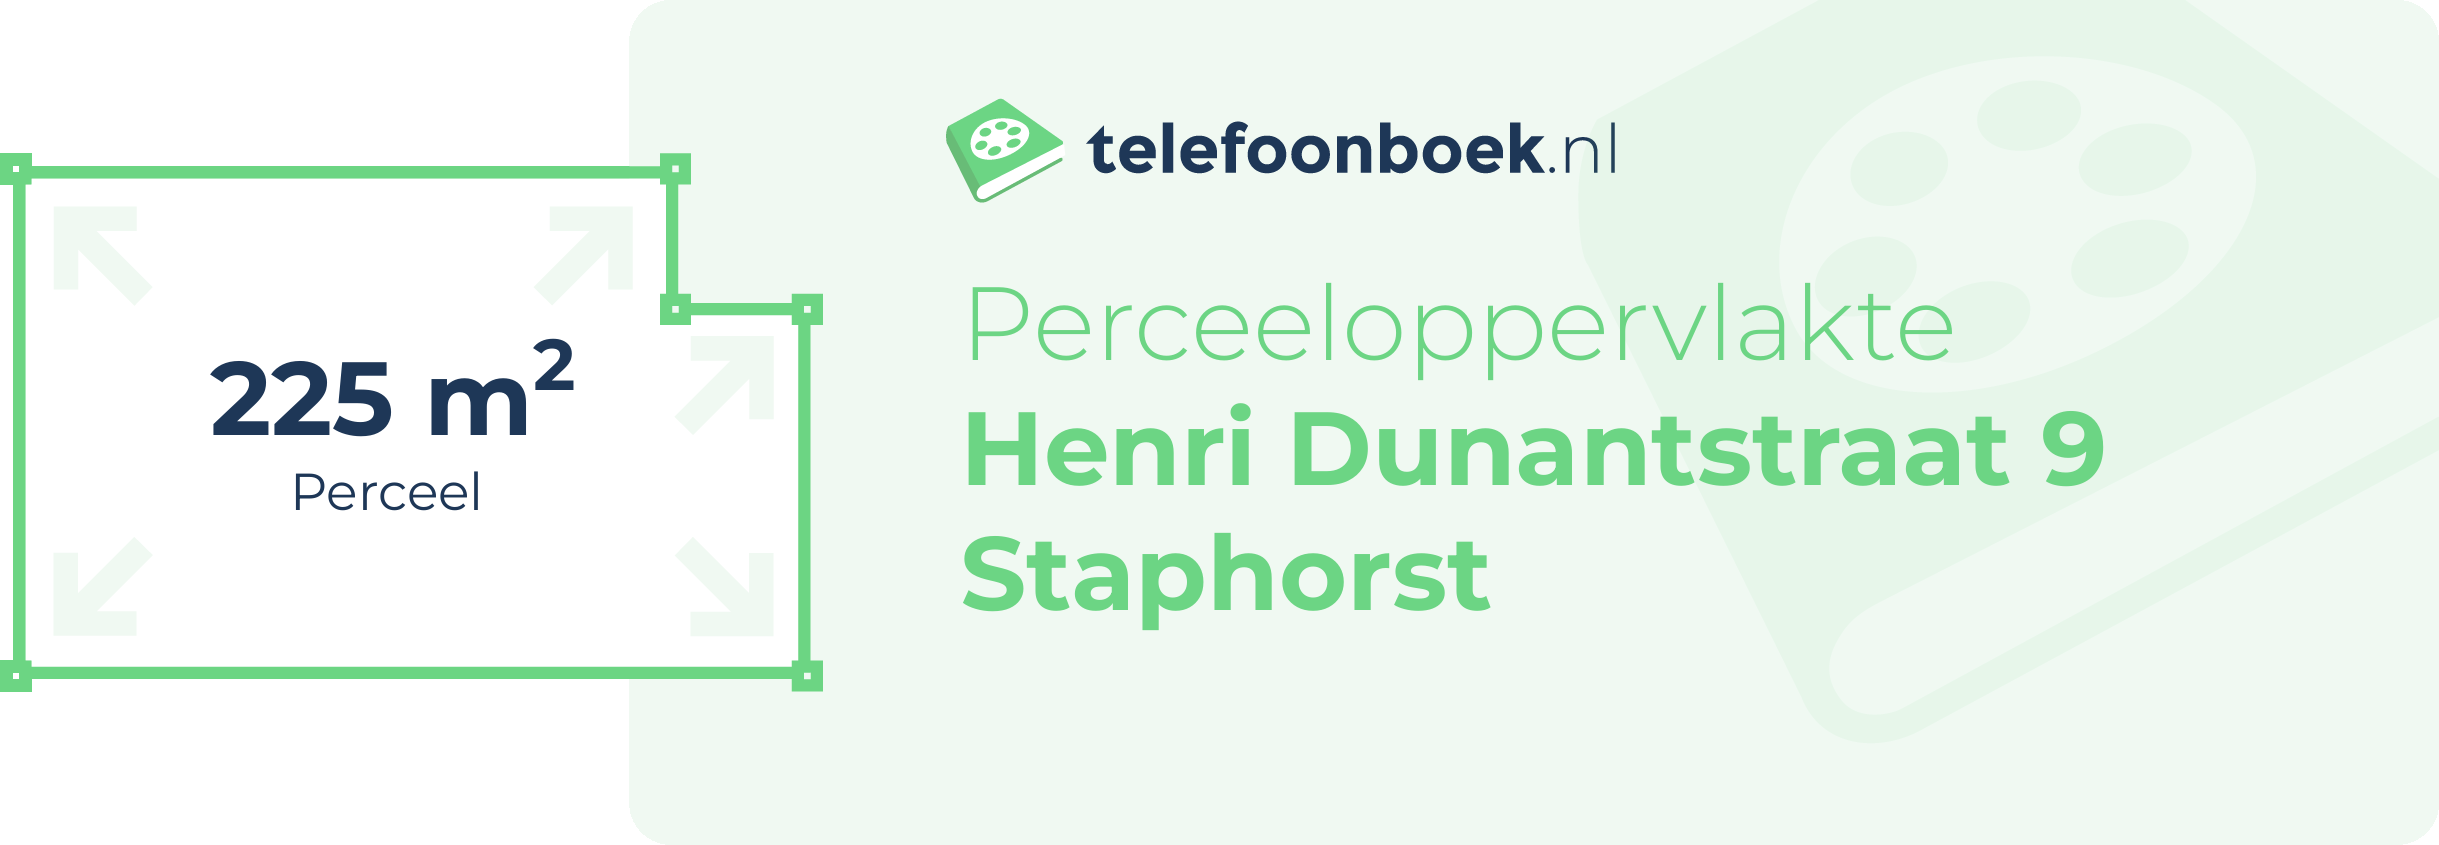 Perceeloppervlakte Henri Dunantstraat 9 Staphorst